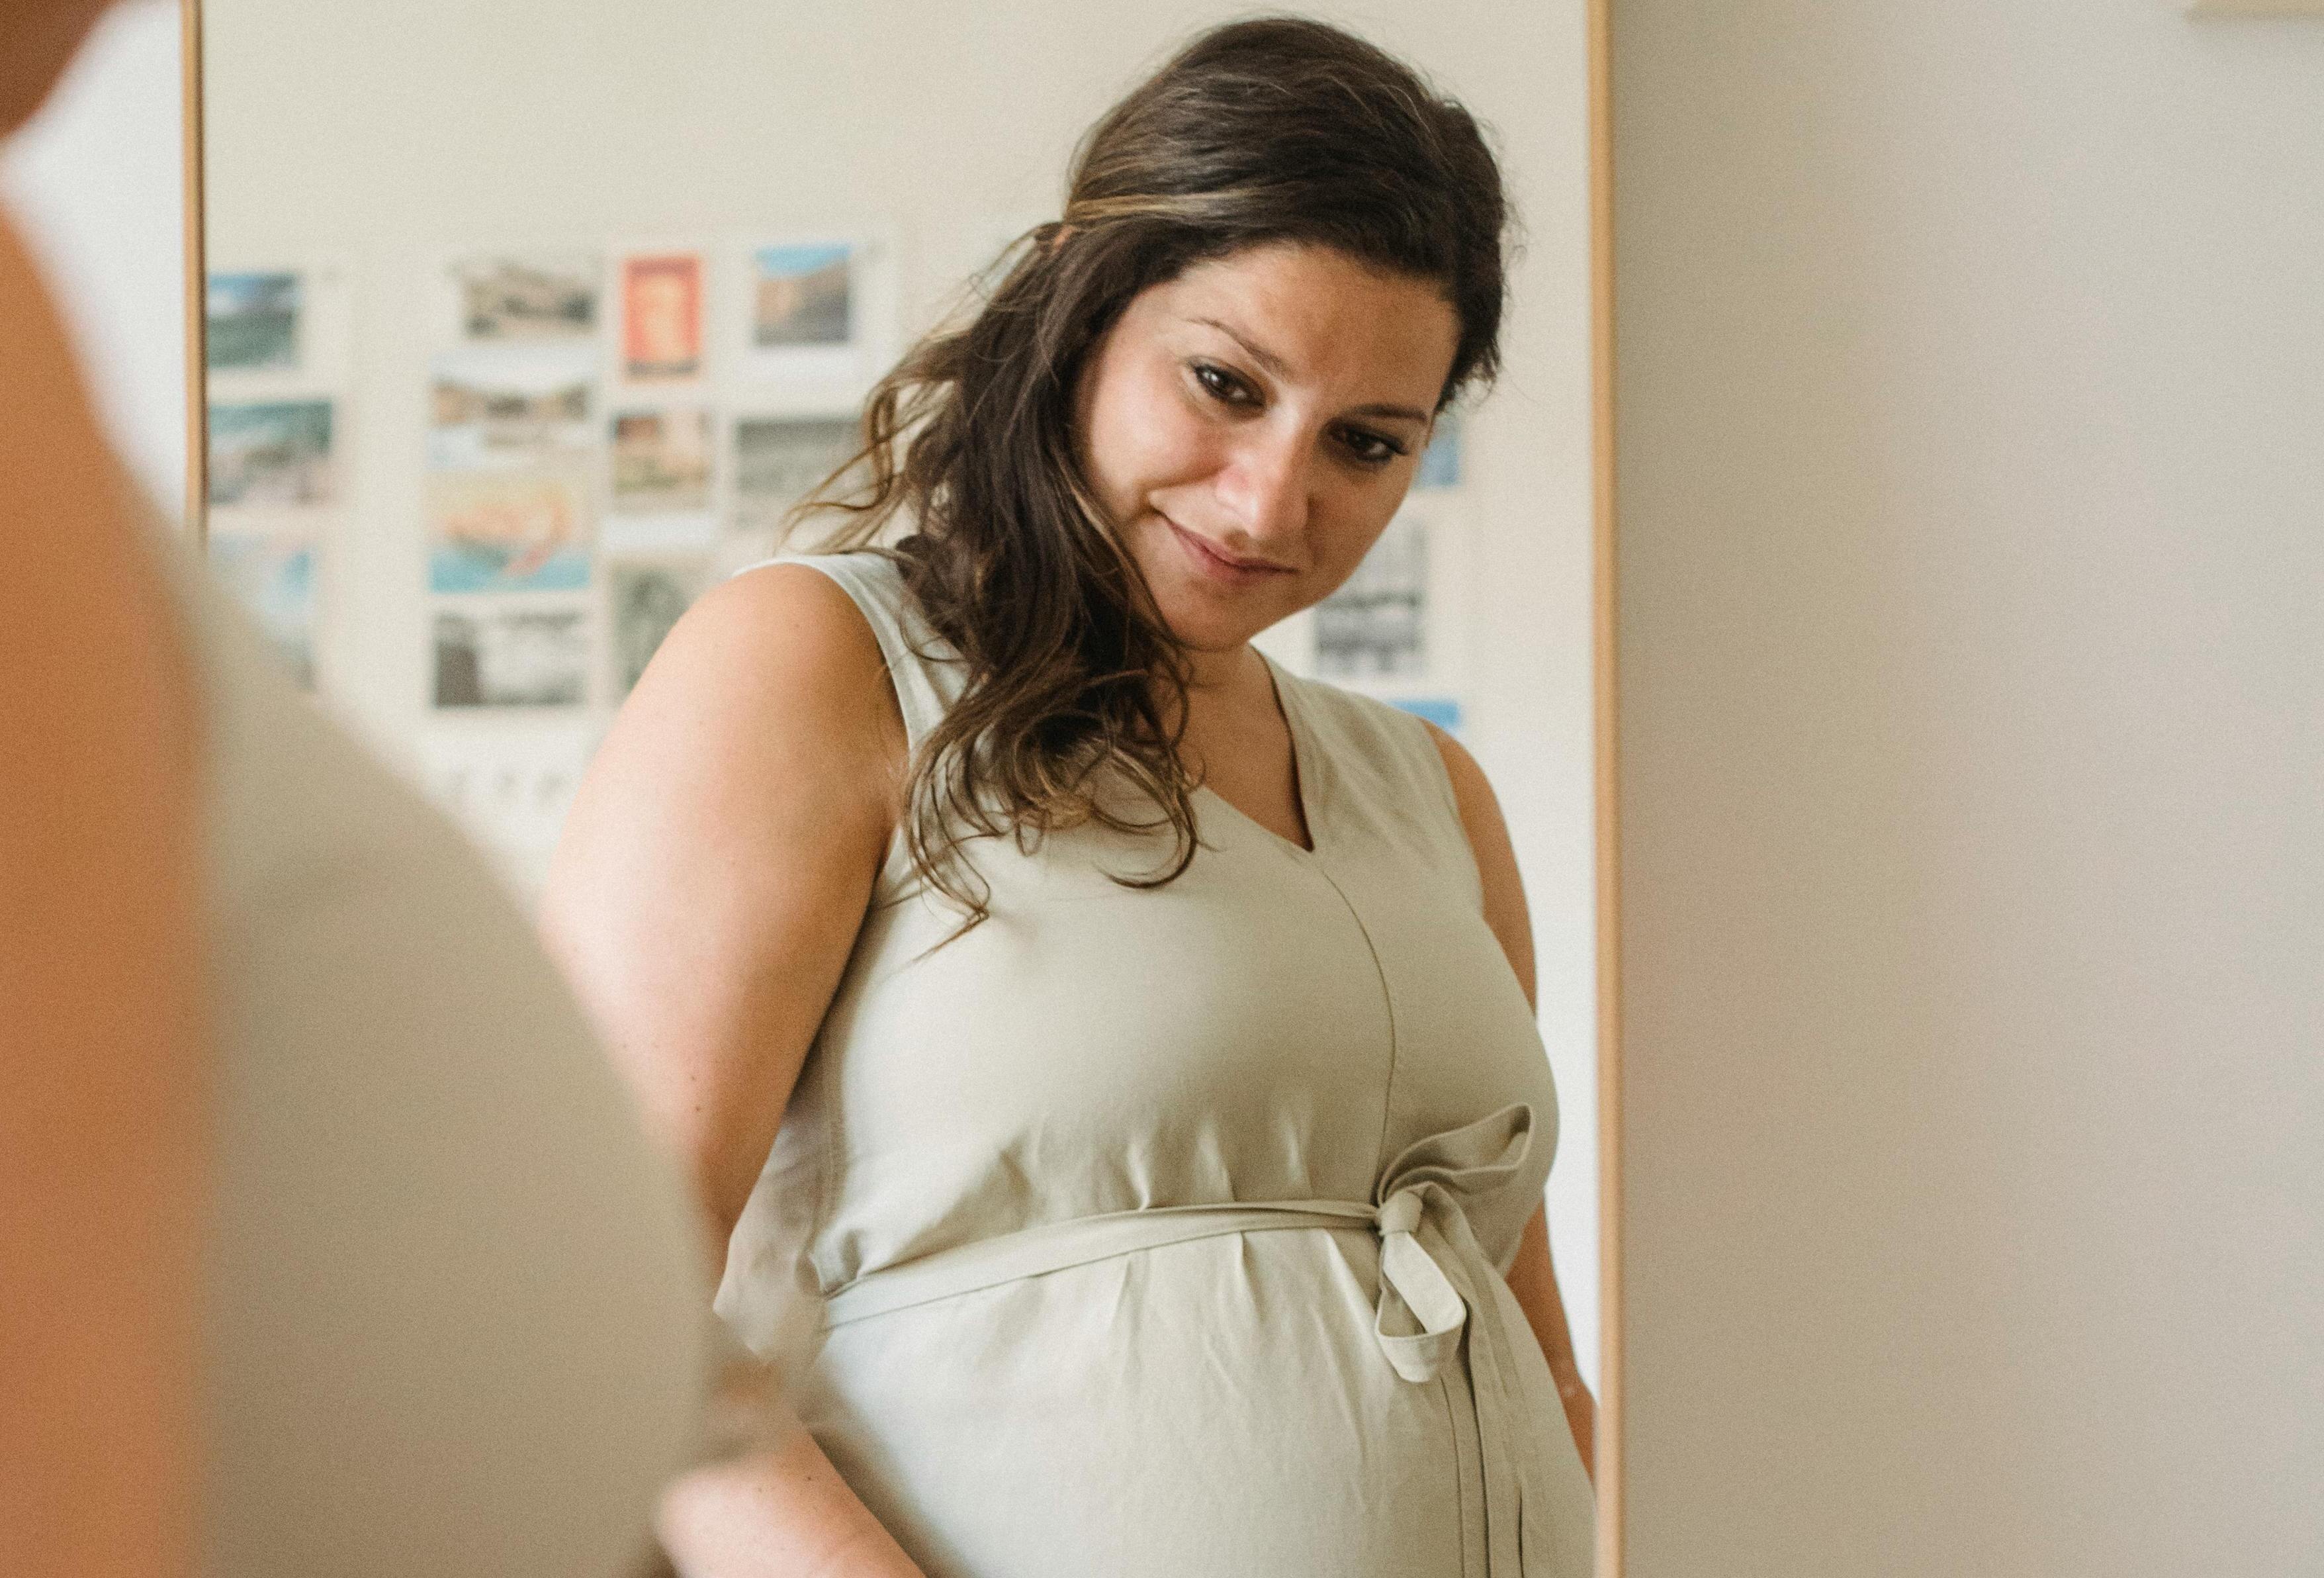 Mujer embarazada con expresión seria | Fuente: Pexels